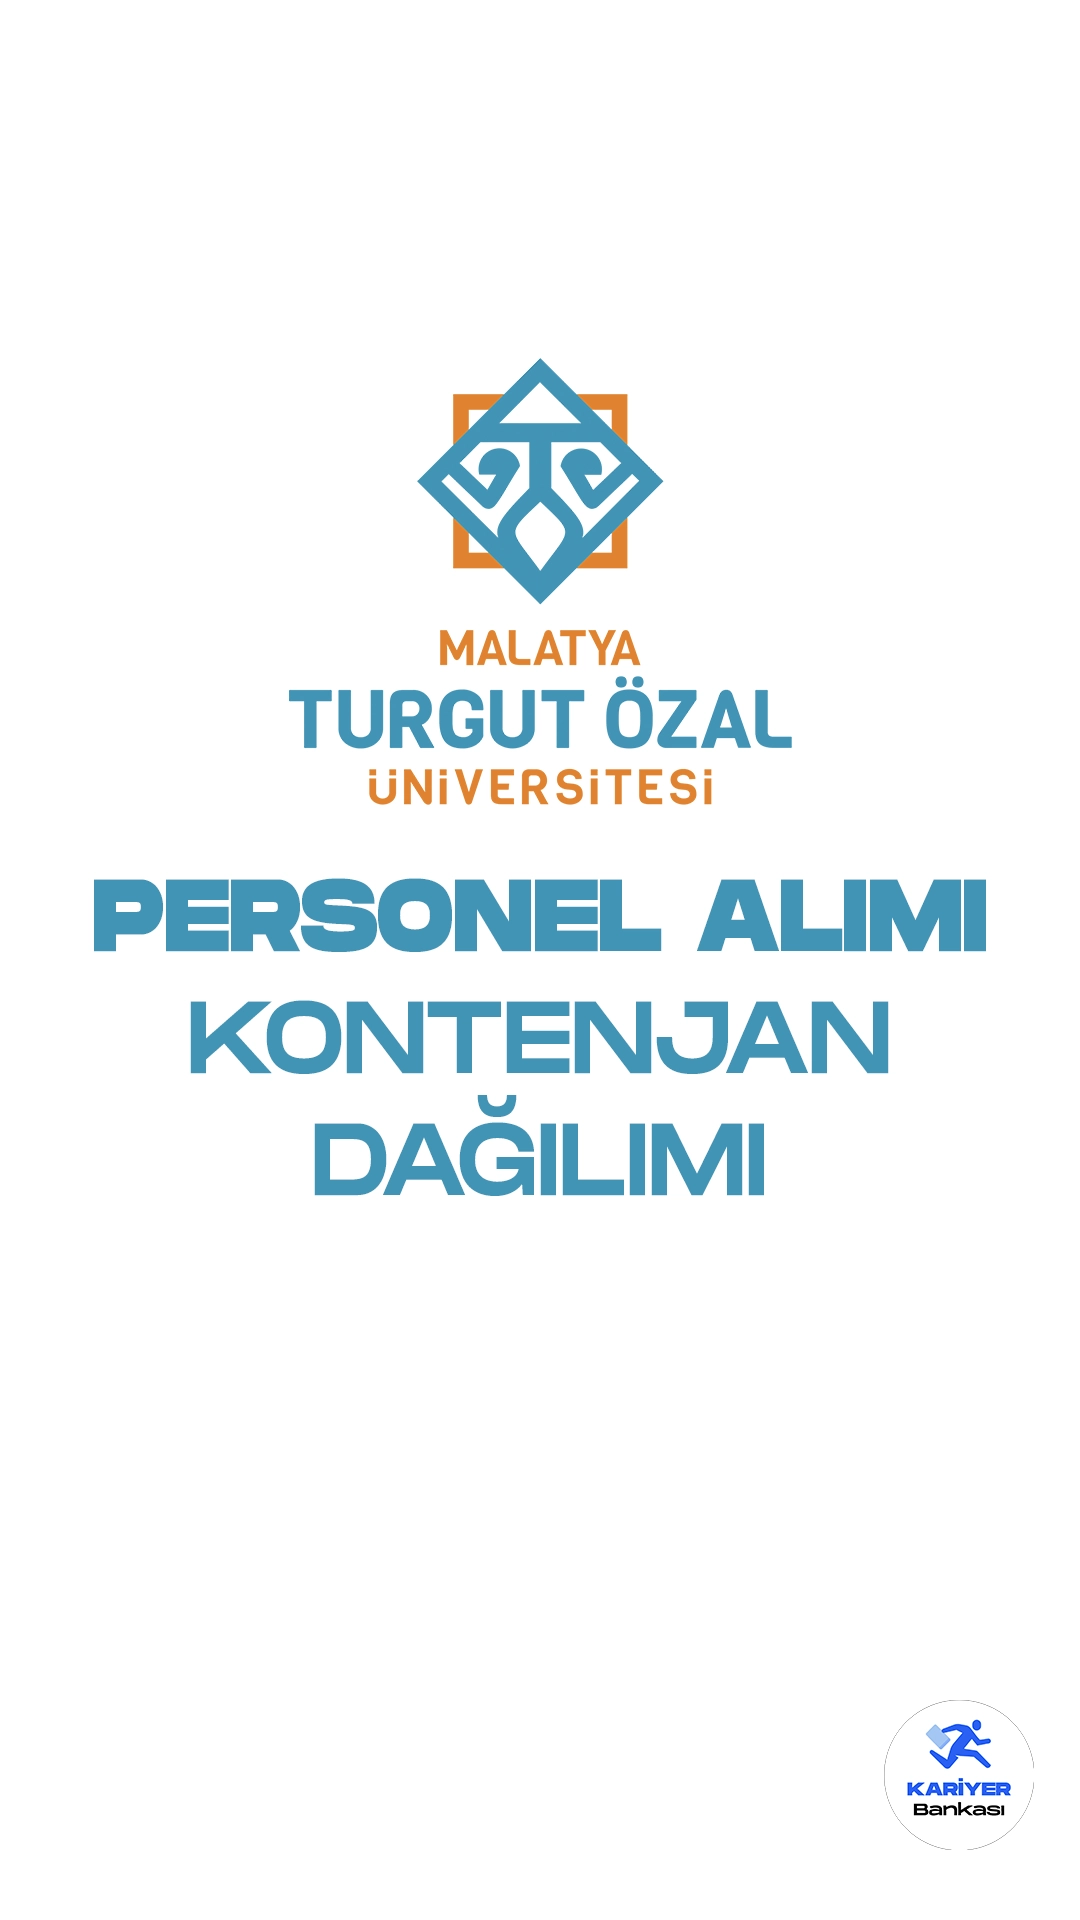 Malatya Turgut Özal Üniversitesi personel alımı başvuruları devam ediyor. İlgili alım duyurusunda, Malatya Turgut Özal Üniversitesine büro personeli, destek personeli, hemşire, koruma ve güvenlik görevlisi, teknisyen, tekniker ve programcı ünvanlarında olmak üzere 62 sözleşmeli personel alımı yapılacağı aktarıldı. Başvuru yapacak adayların her ünvan için belirtilen şartları taşıması gerekmektedir.